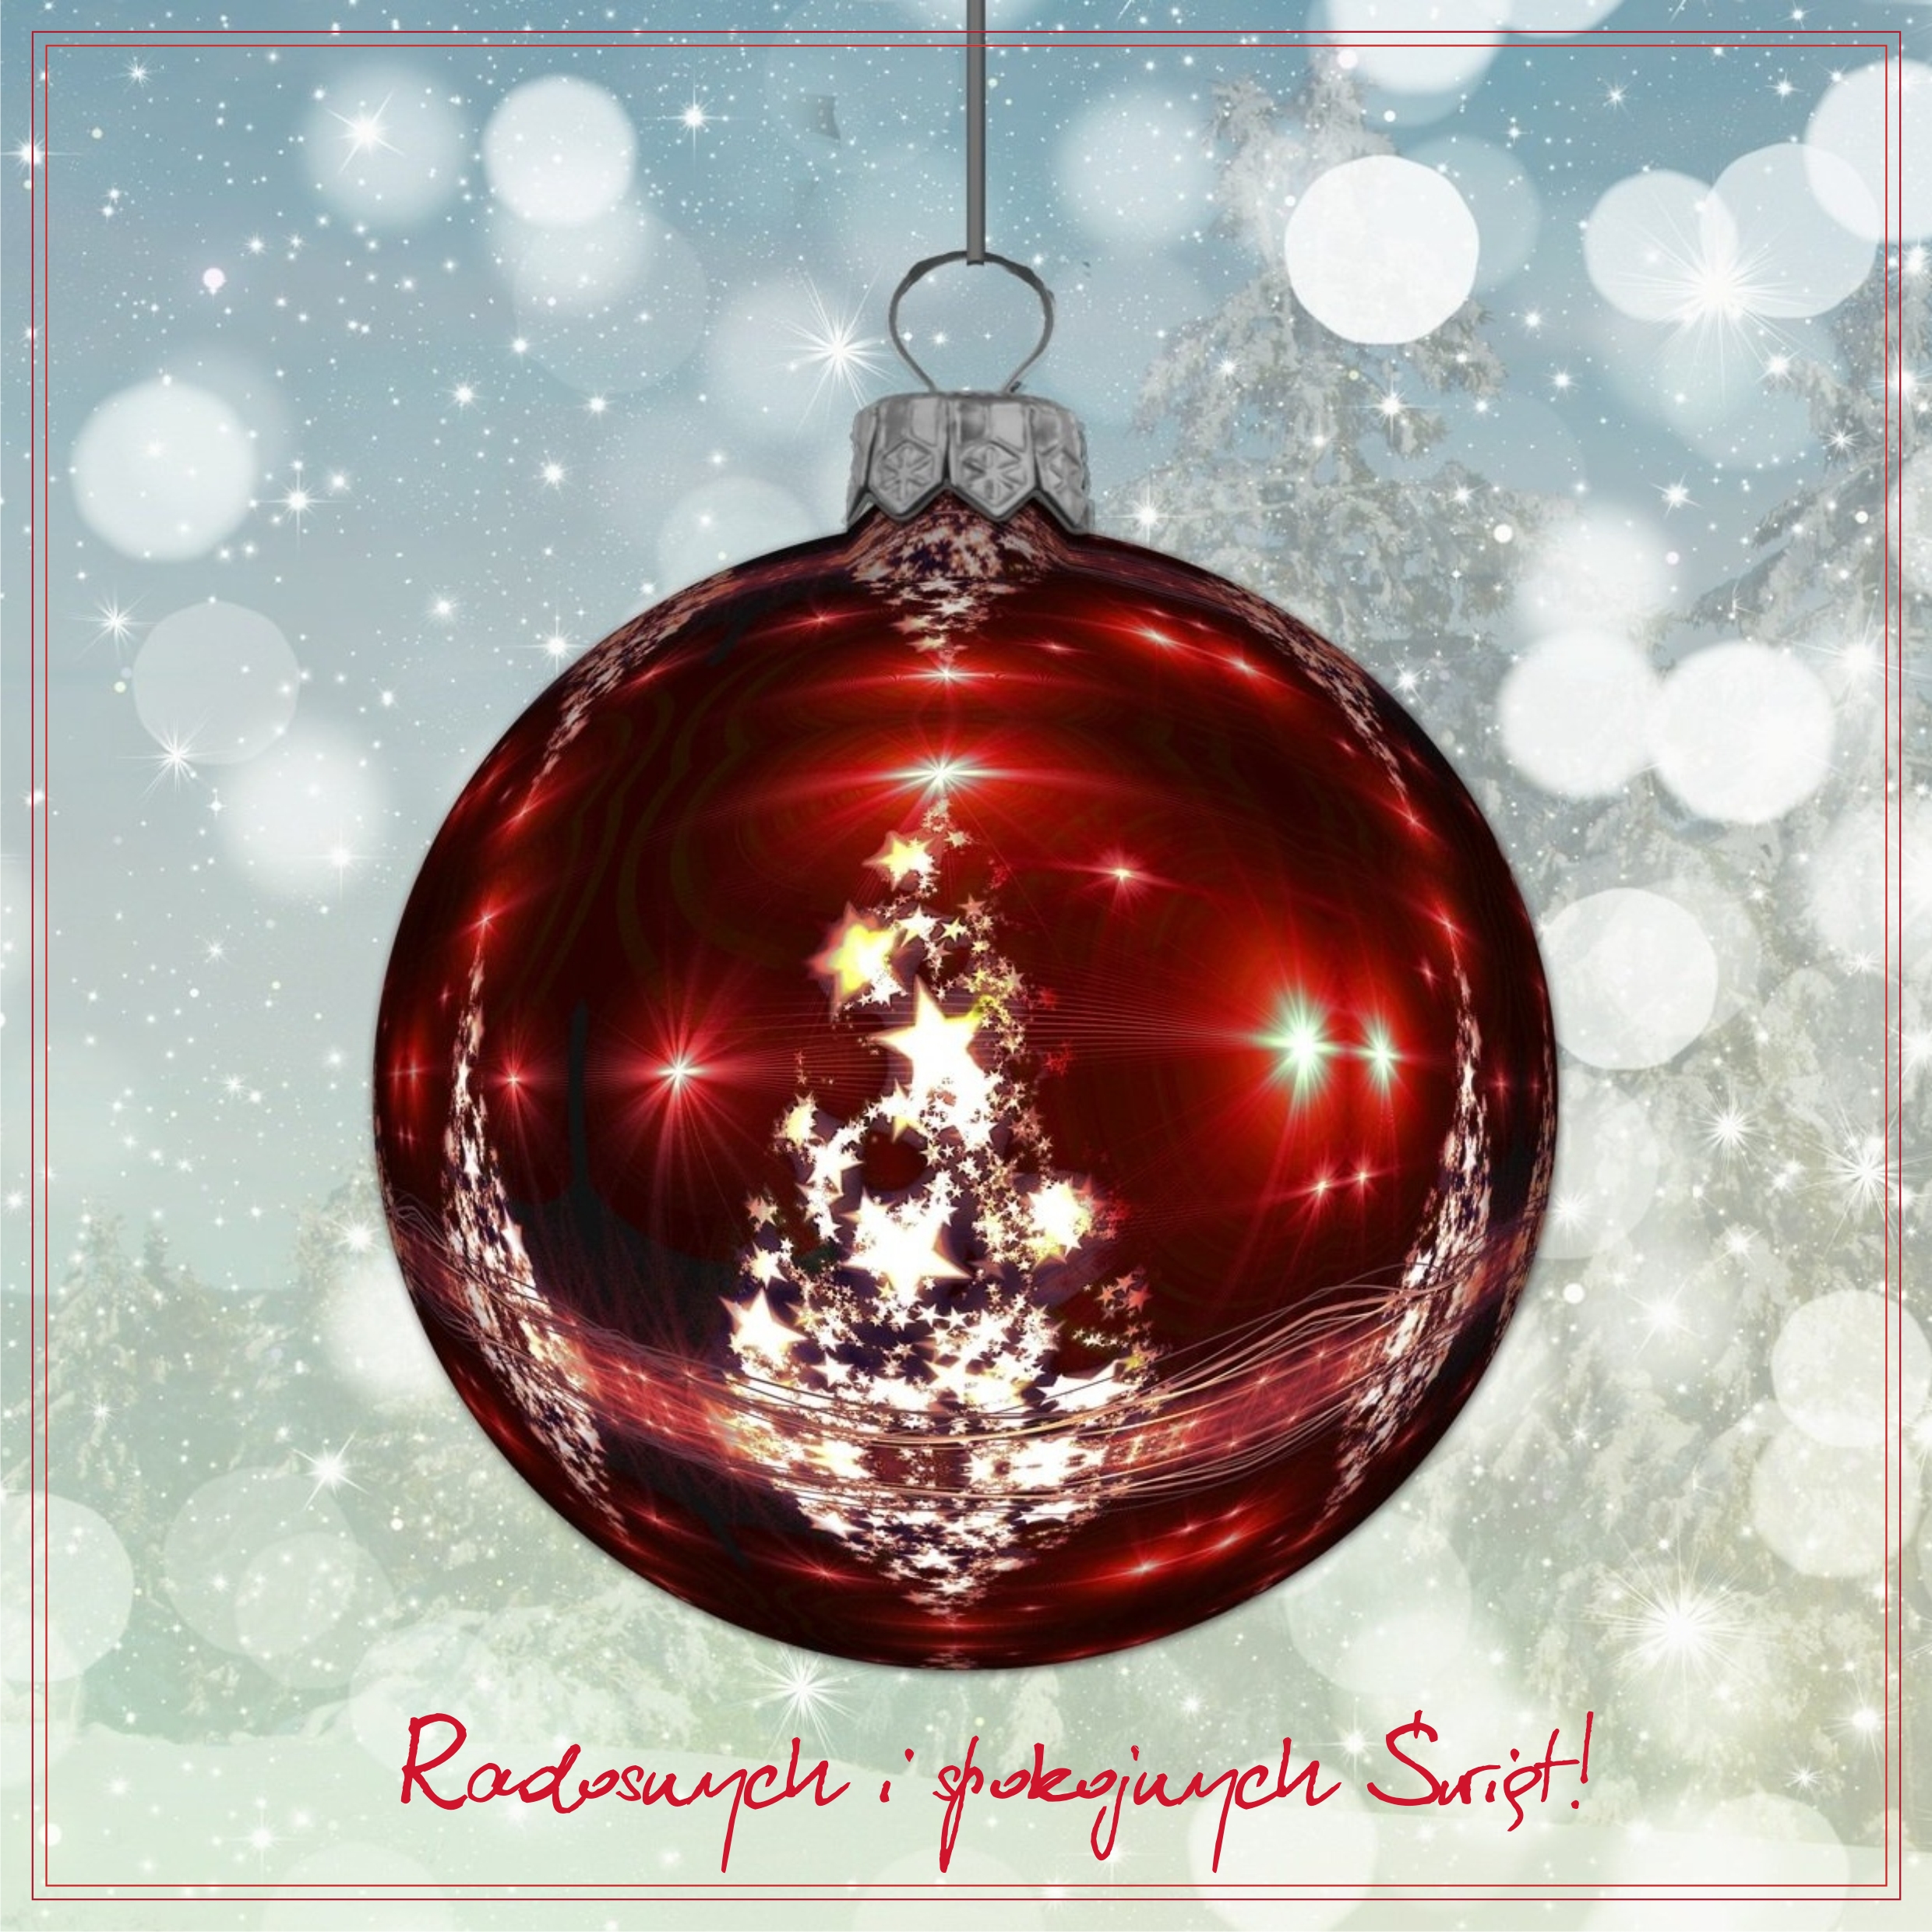 Życzenia Bożonarodzeniowe: "Radosnych I Spokojnych Świąt!" Grafika Z Czerwoną Bombką, W Której Odbijają Się Białe światełka I Choinka.